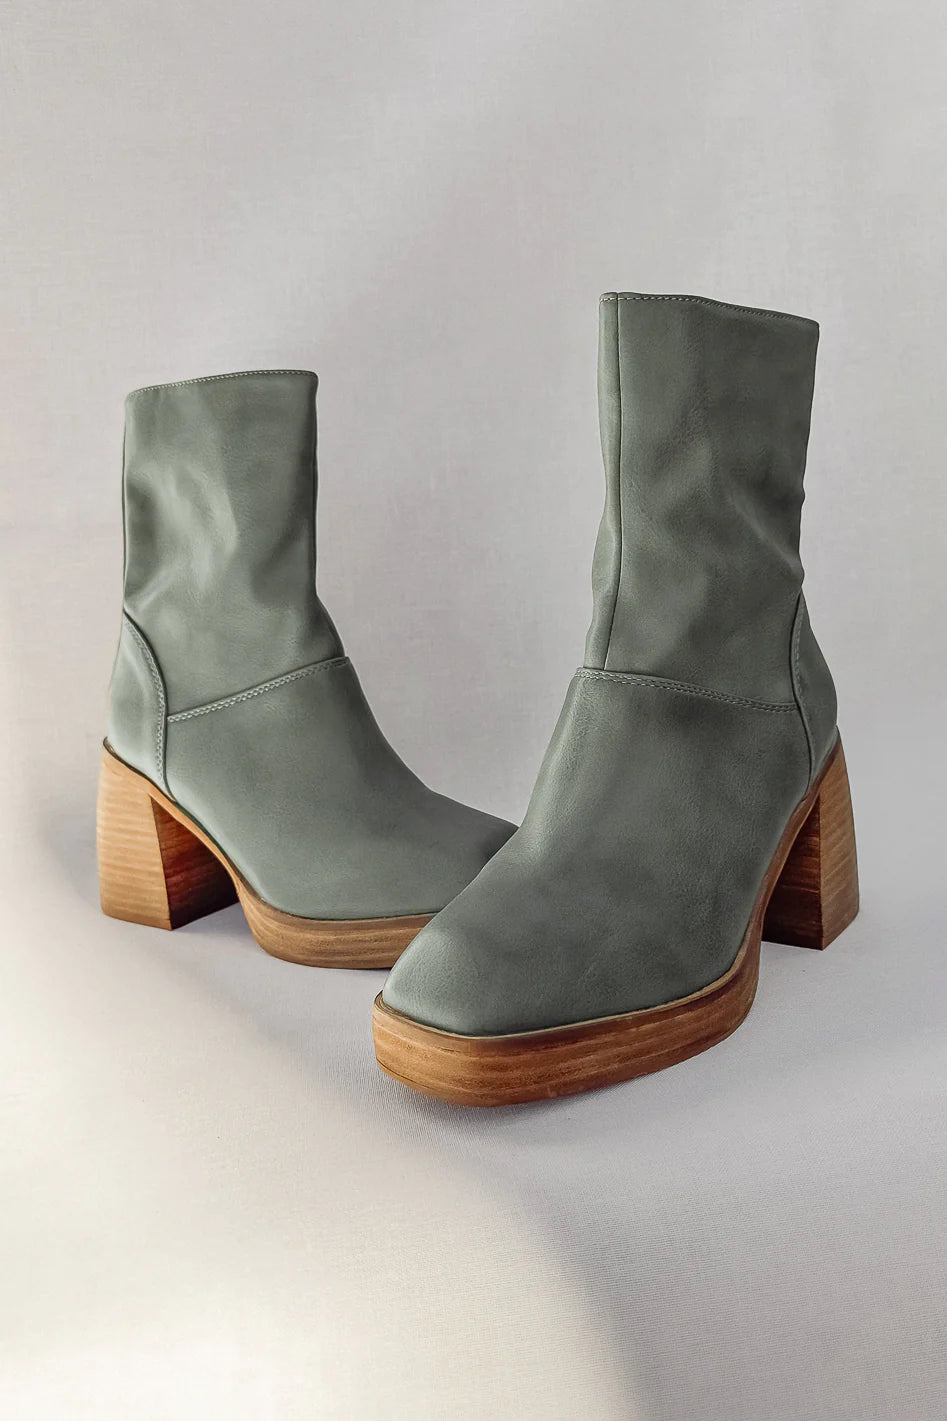 Moss green heeled boots